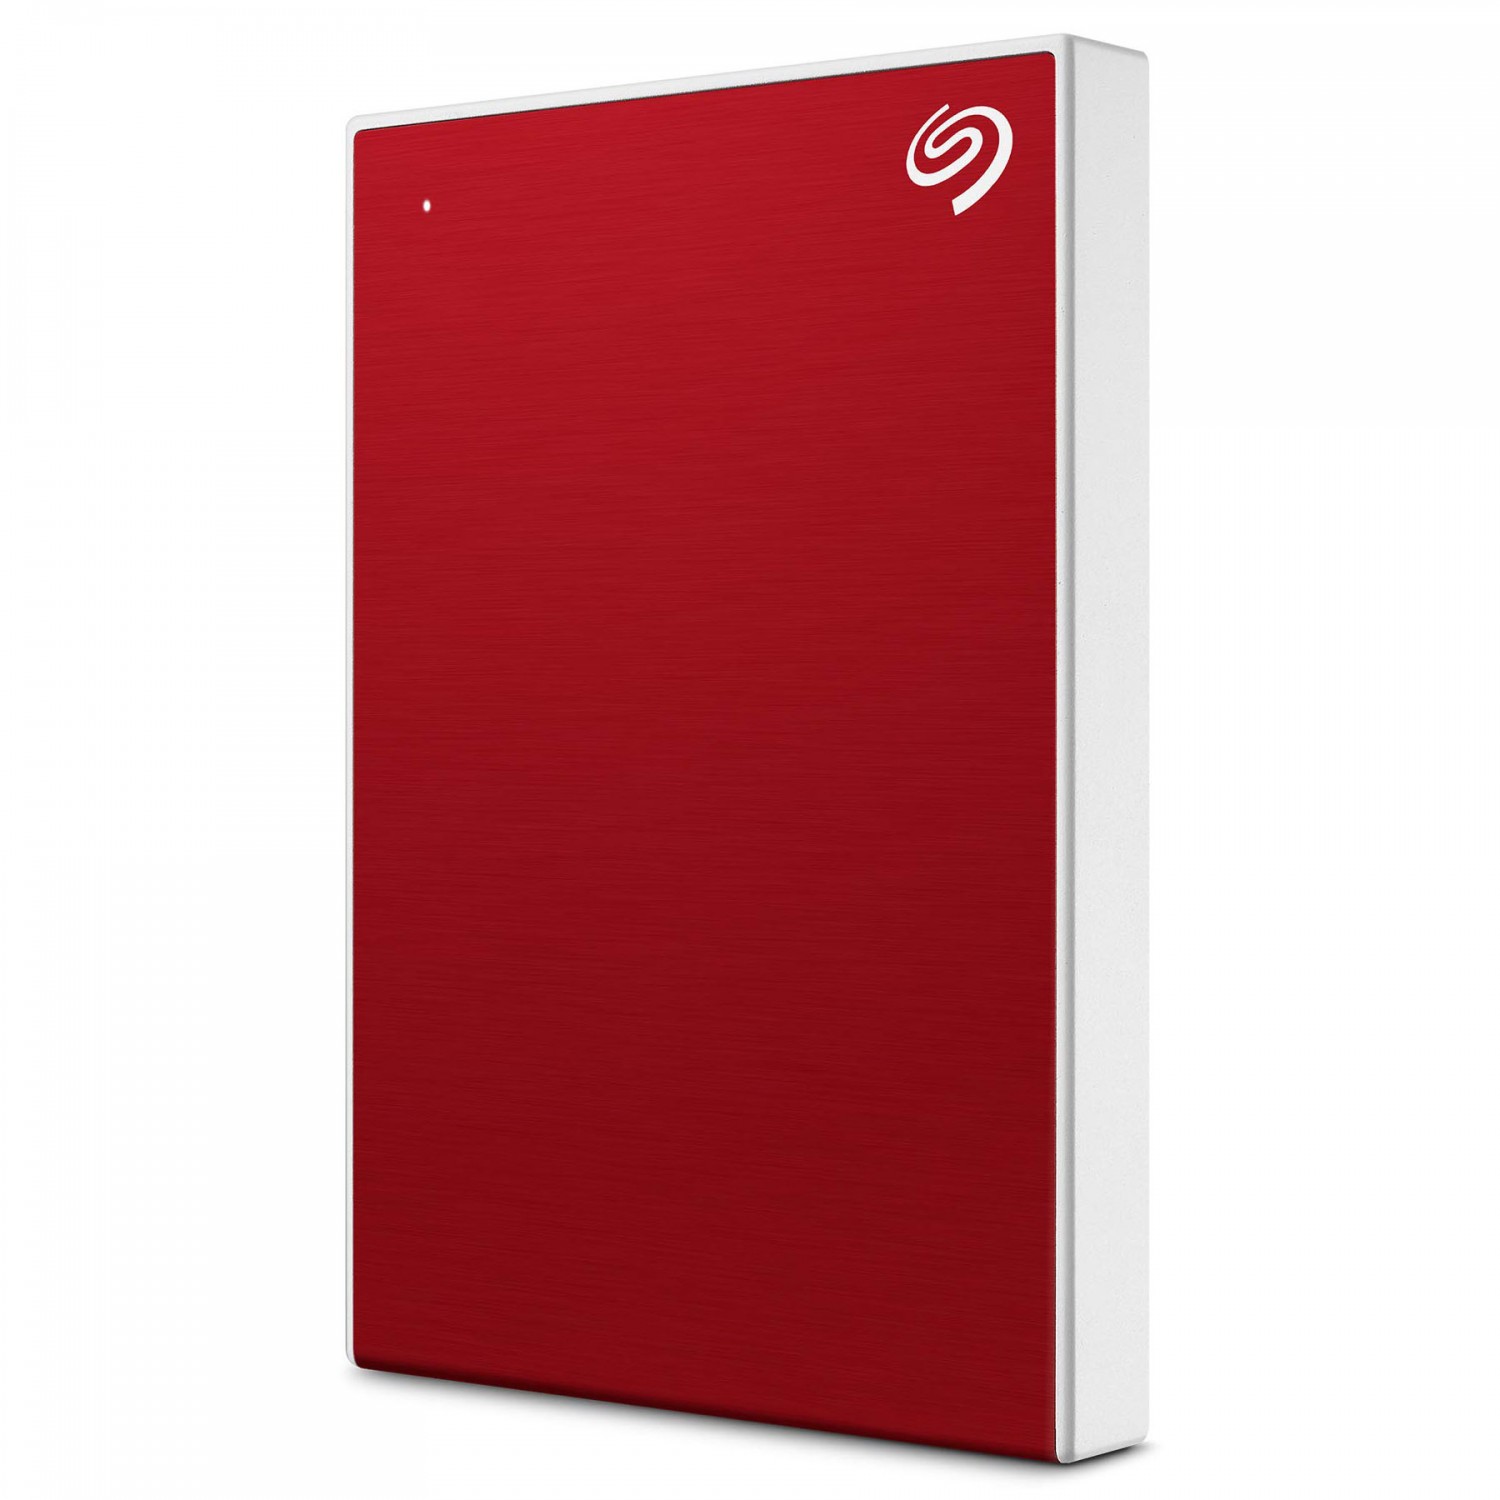 هارد دیسک اکسترنال Seagate One Touch 1TB - Red